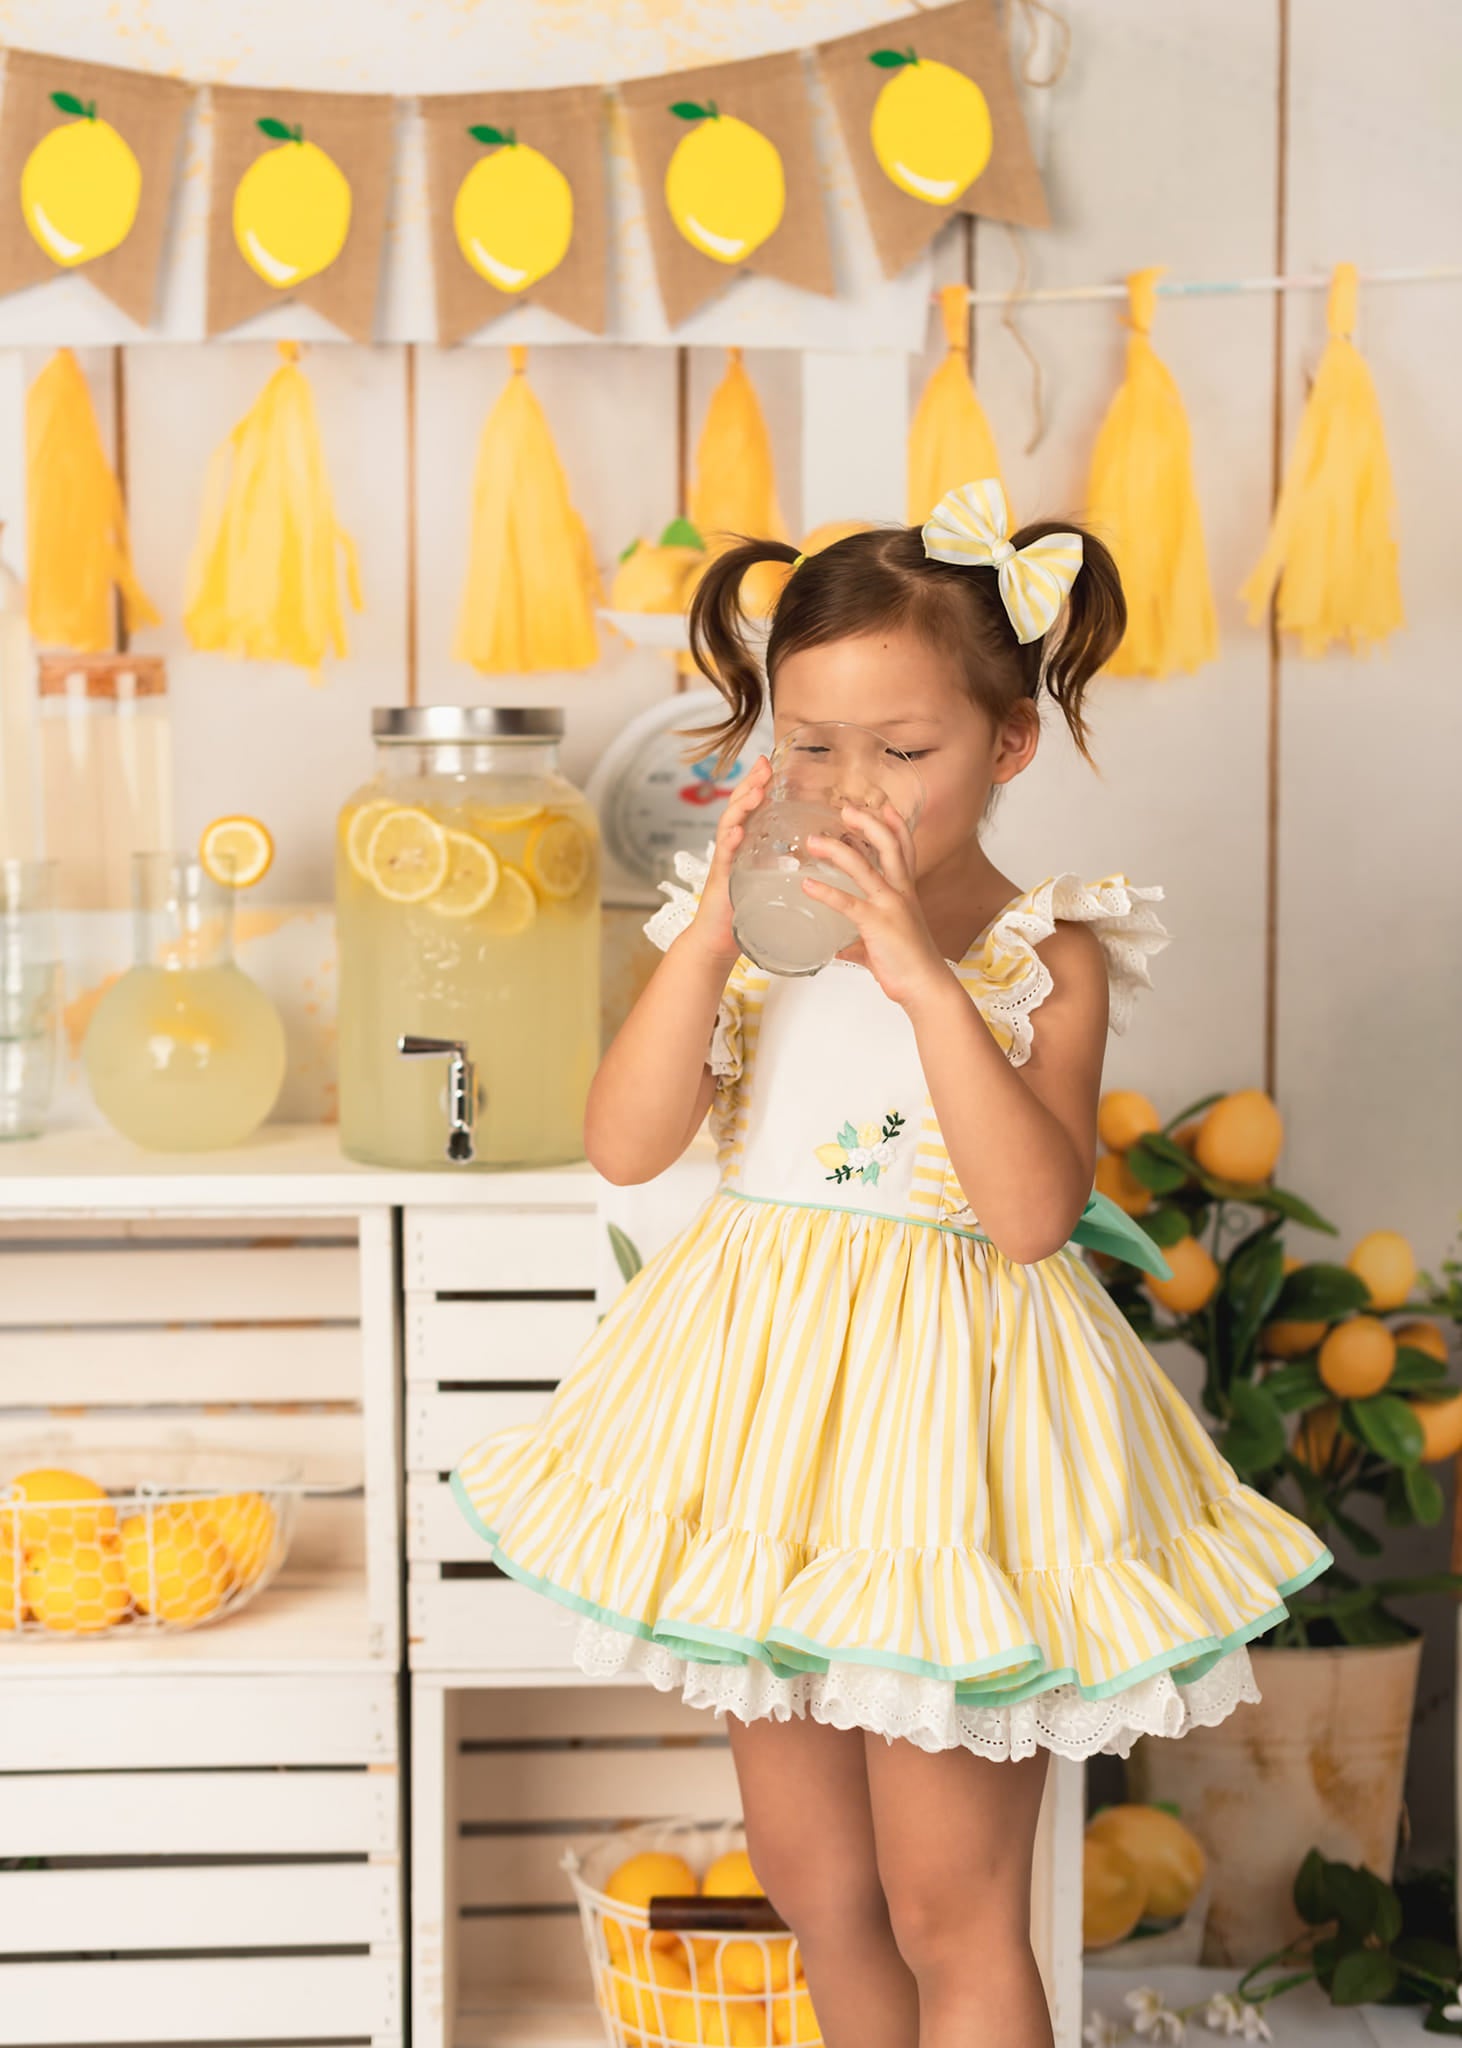 Kate Magasin de limonade Été Toile de fond conçue par Jia Chan Photographie